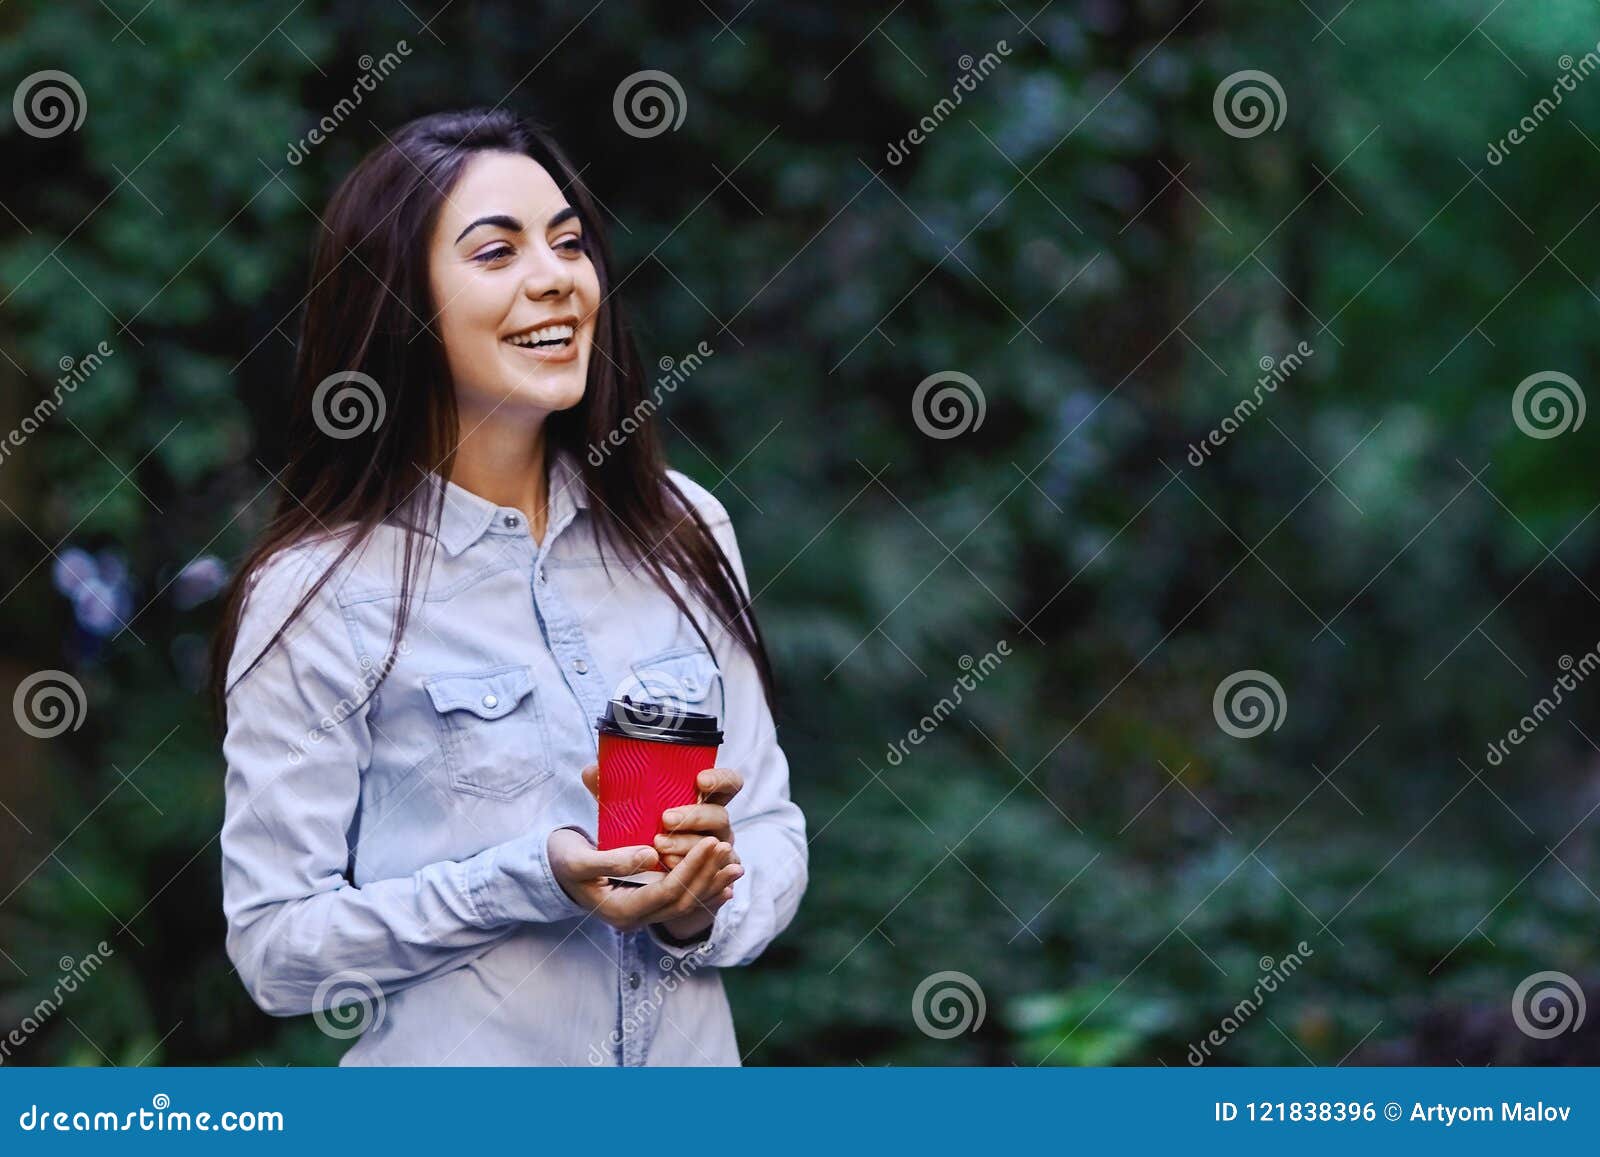 Mujer sonriente joven que sostiene la taza de café. Mujer morena sonriente joven, camisa azul del dril de algodón que lleva y sostener la taza de café roja